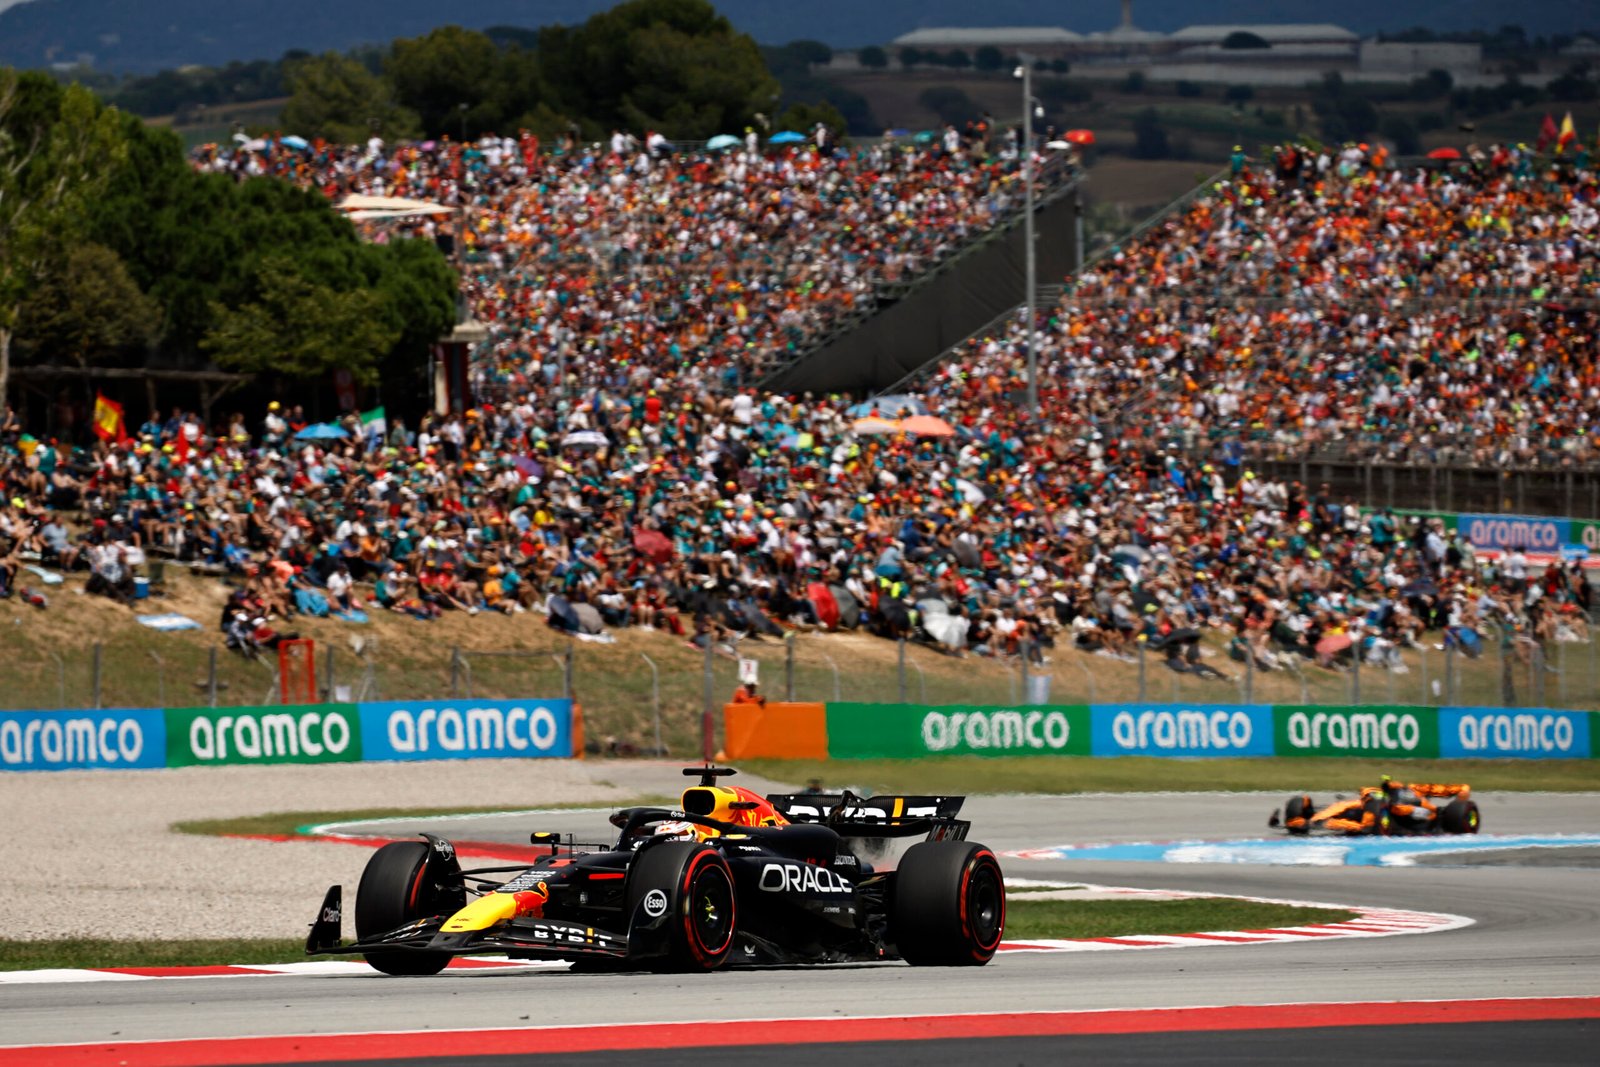 Estratégia de duas paradas é a escolha popular na Espanha; Norris desafia Verstappen na busca pela vitória